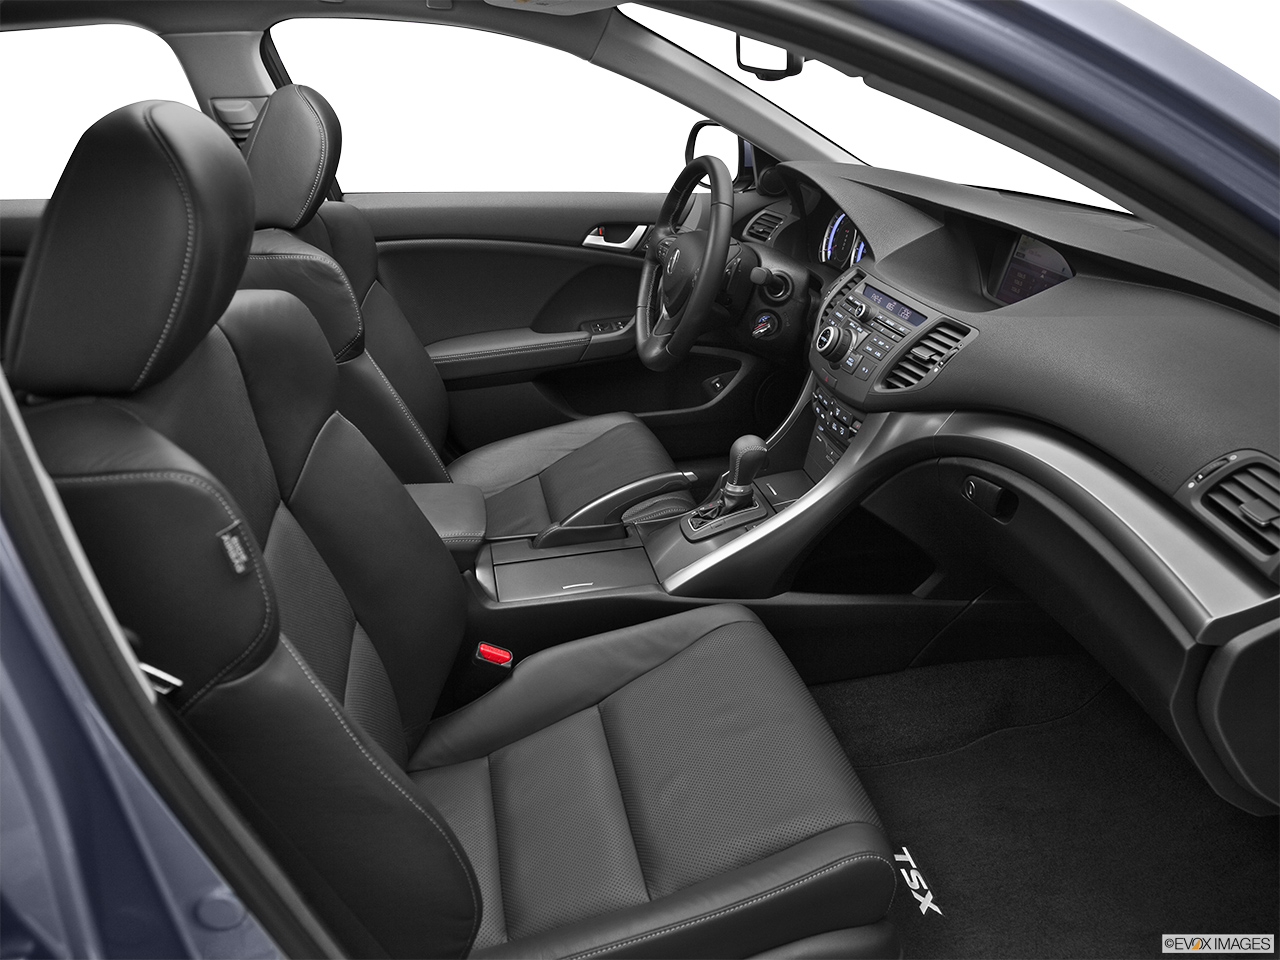 2012 Acura TSX V6 Passenger seat. 